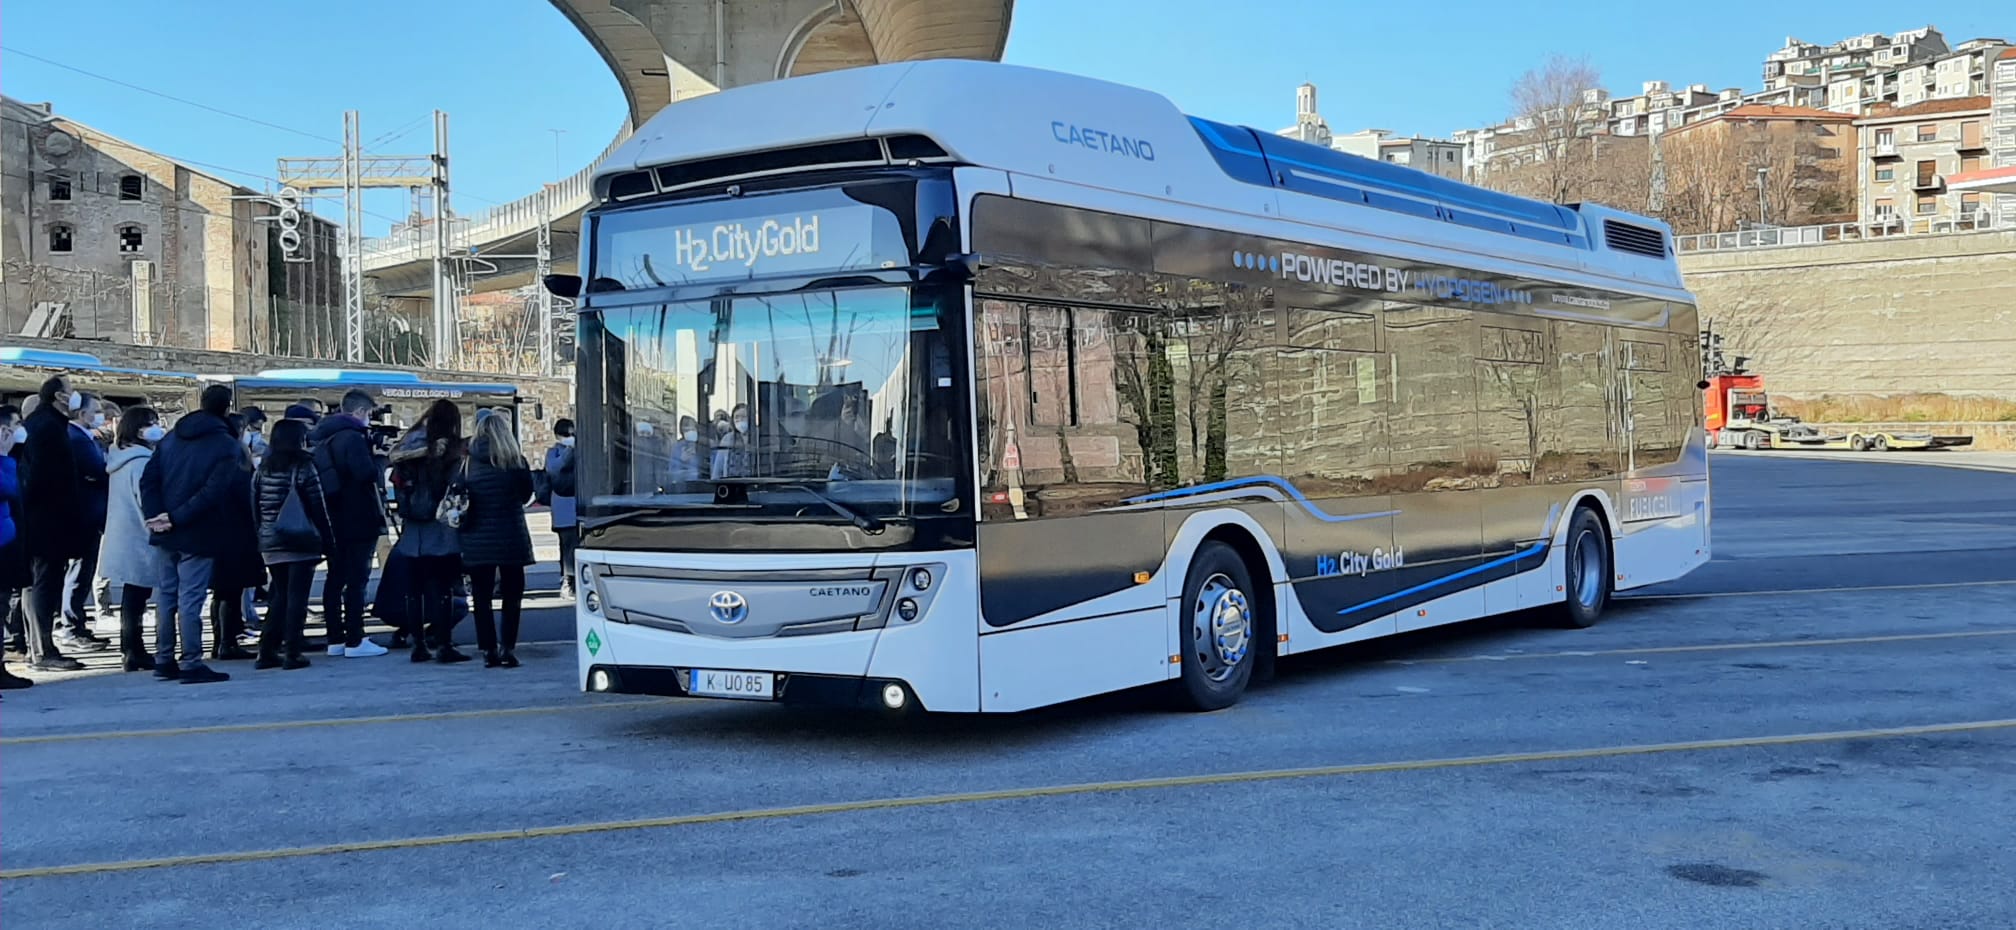 Caetano hydrogen bus demos in Italy